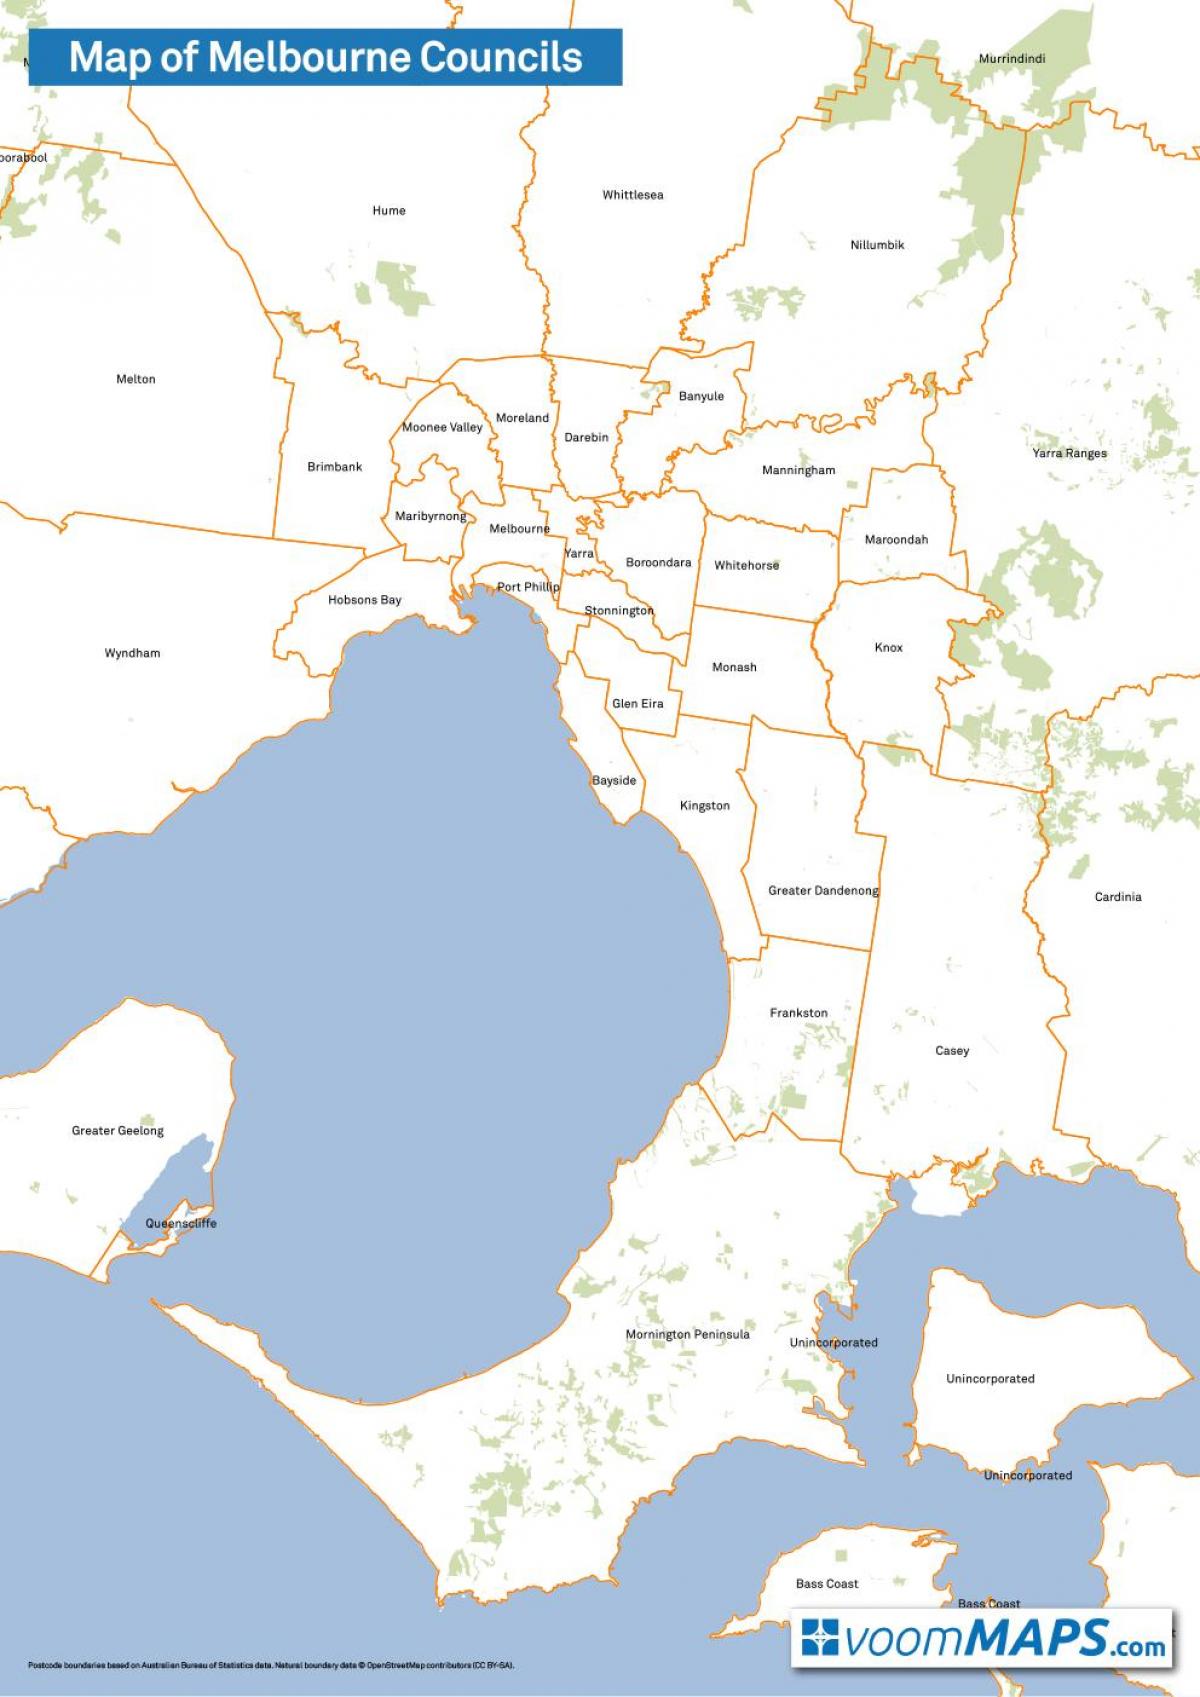 zemljevid Melbourne svetov